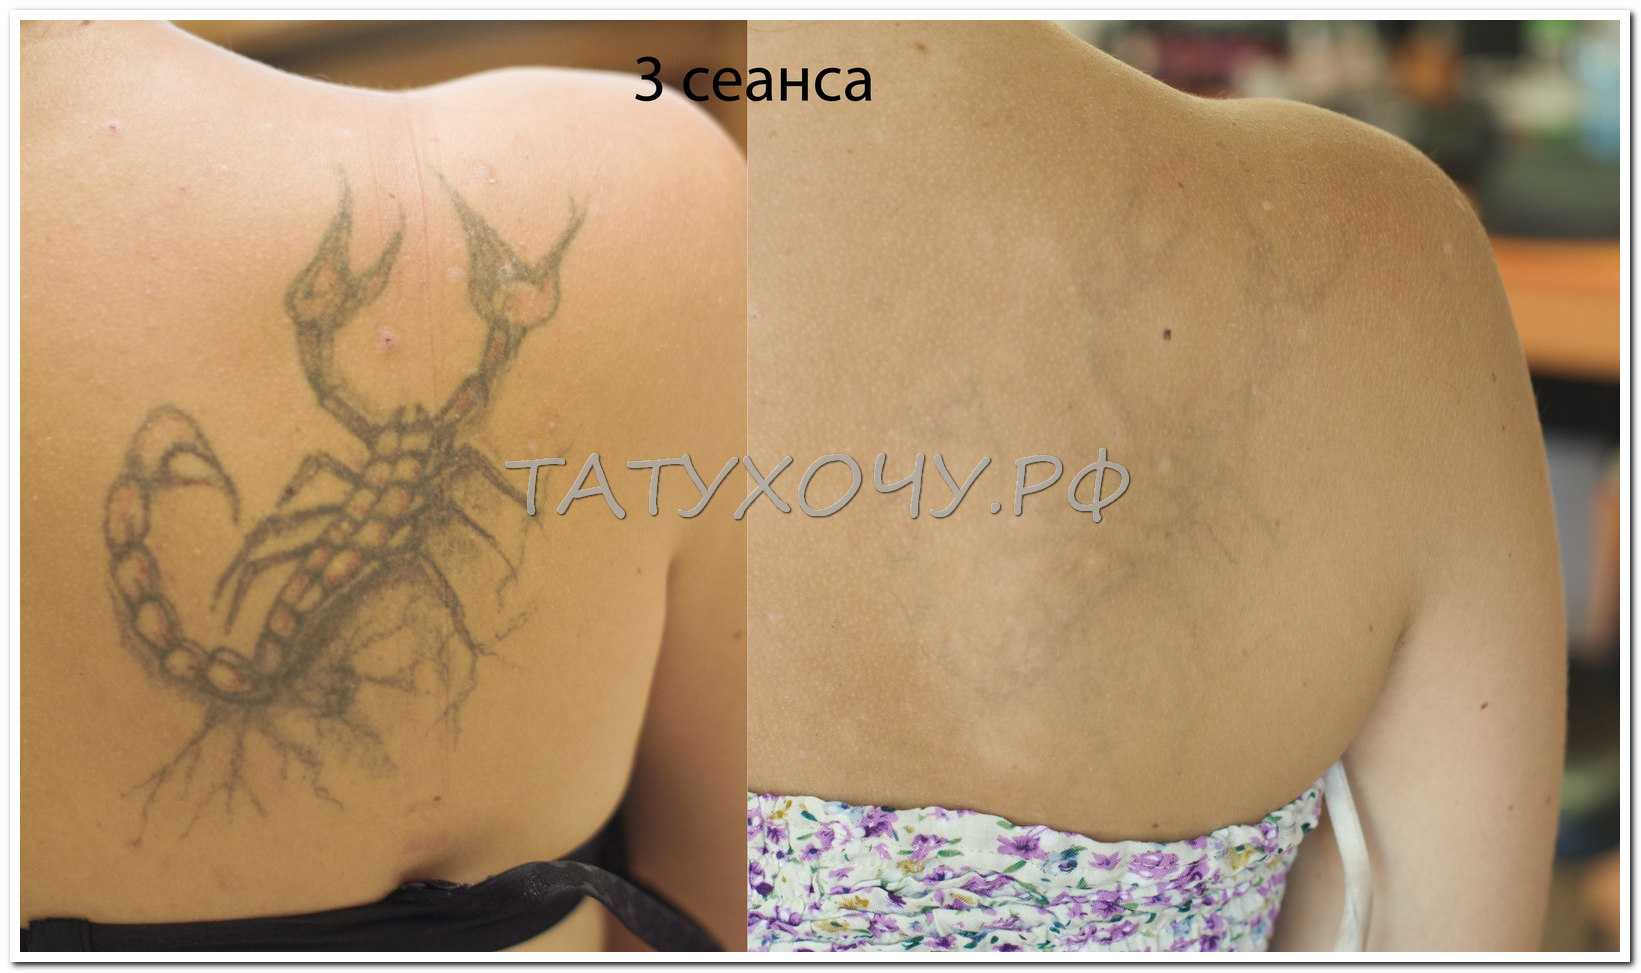 Последствия после удаления татуажа лазером – обзор с фото